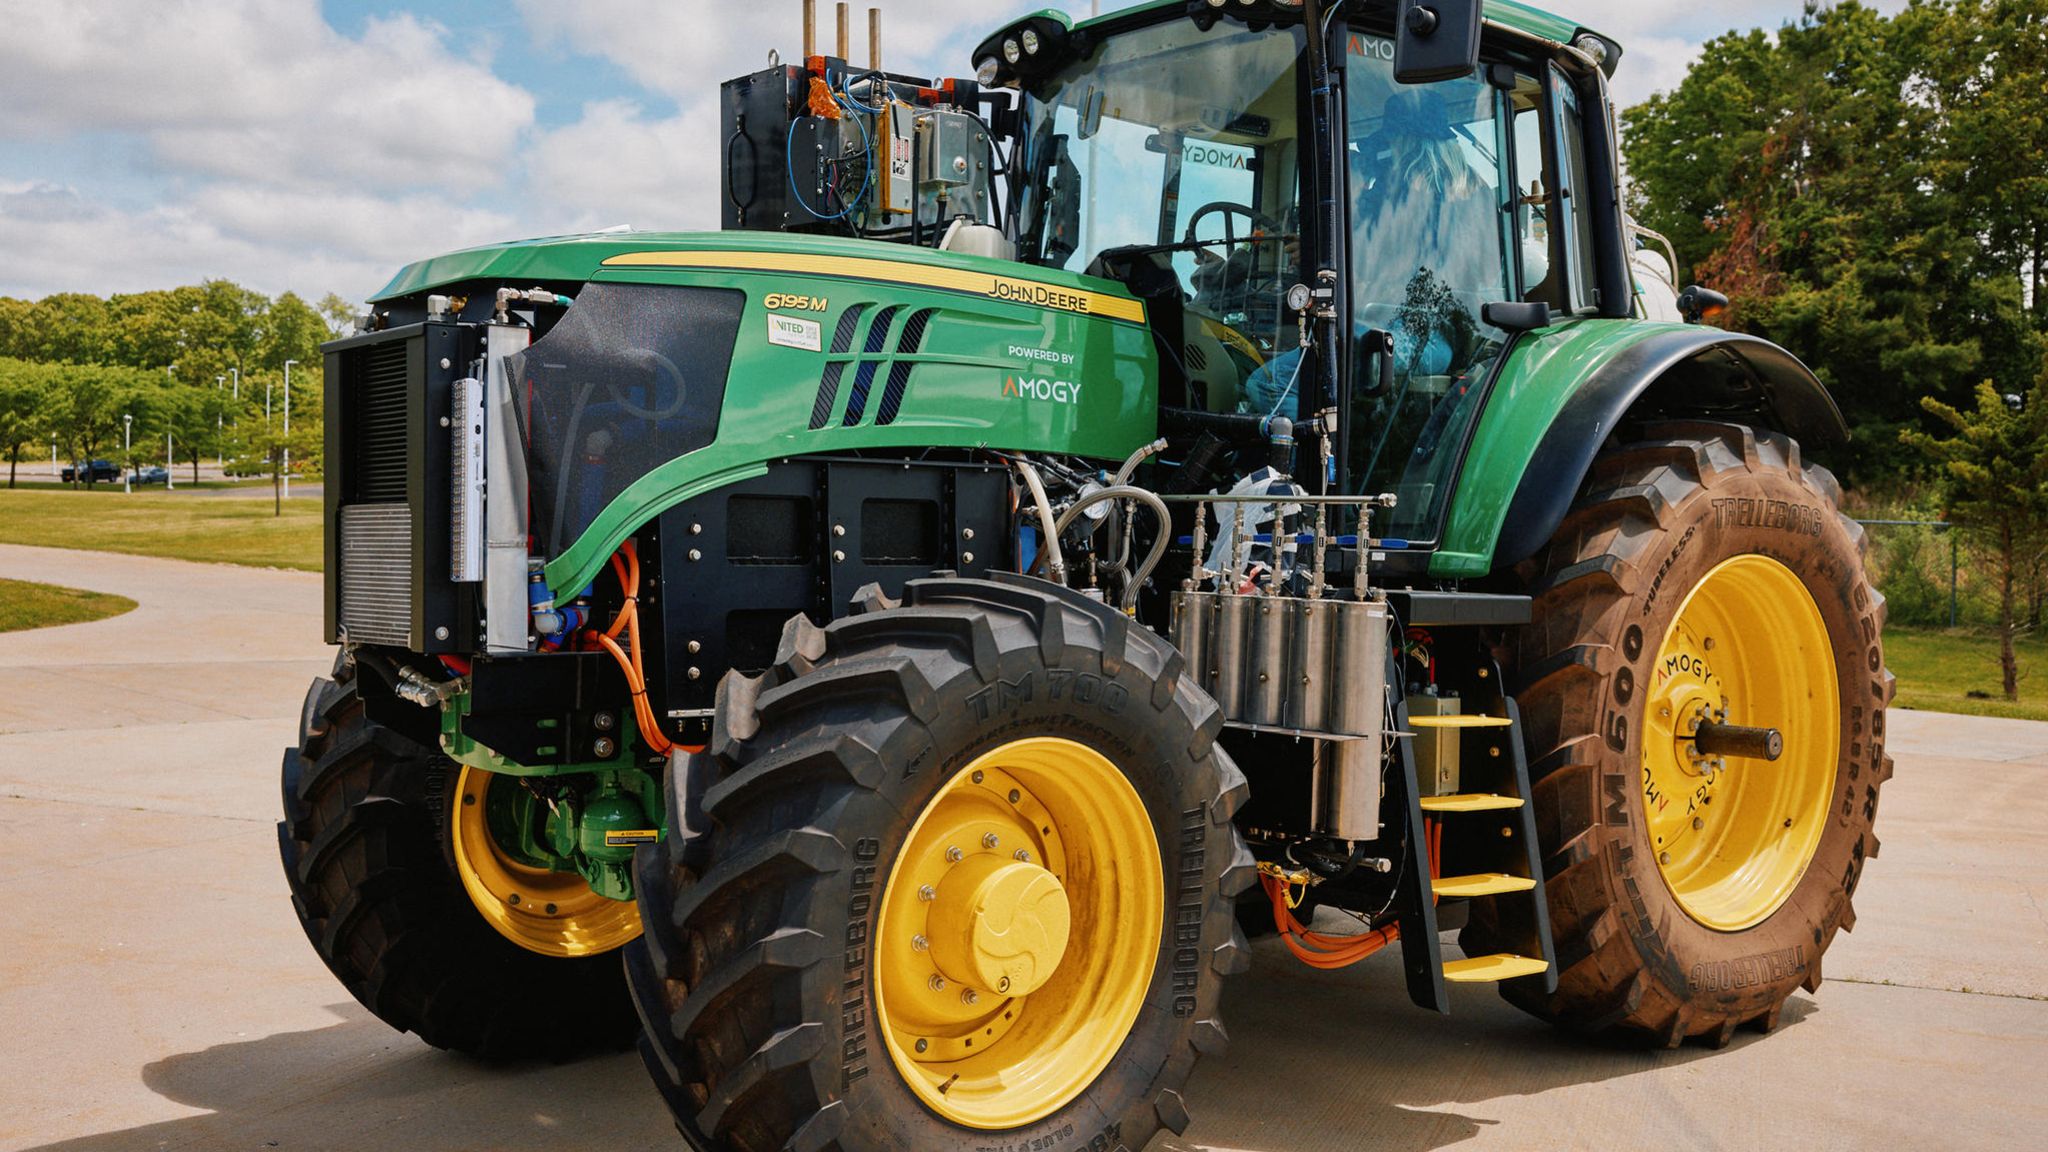 Billig und umweltschonend - John Deere Traktor tankt jetzt Gülle